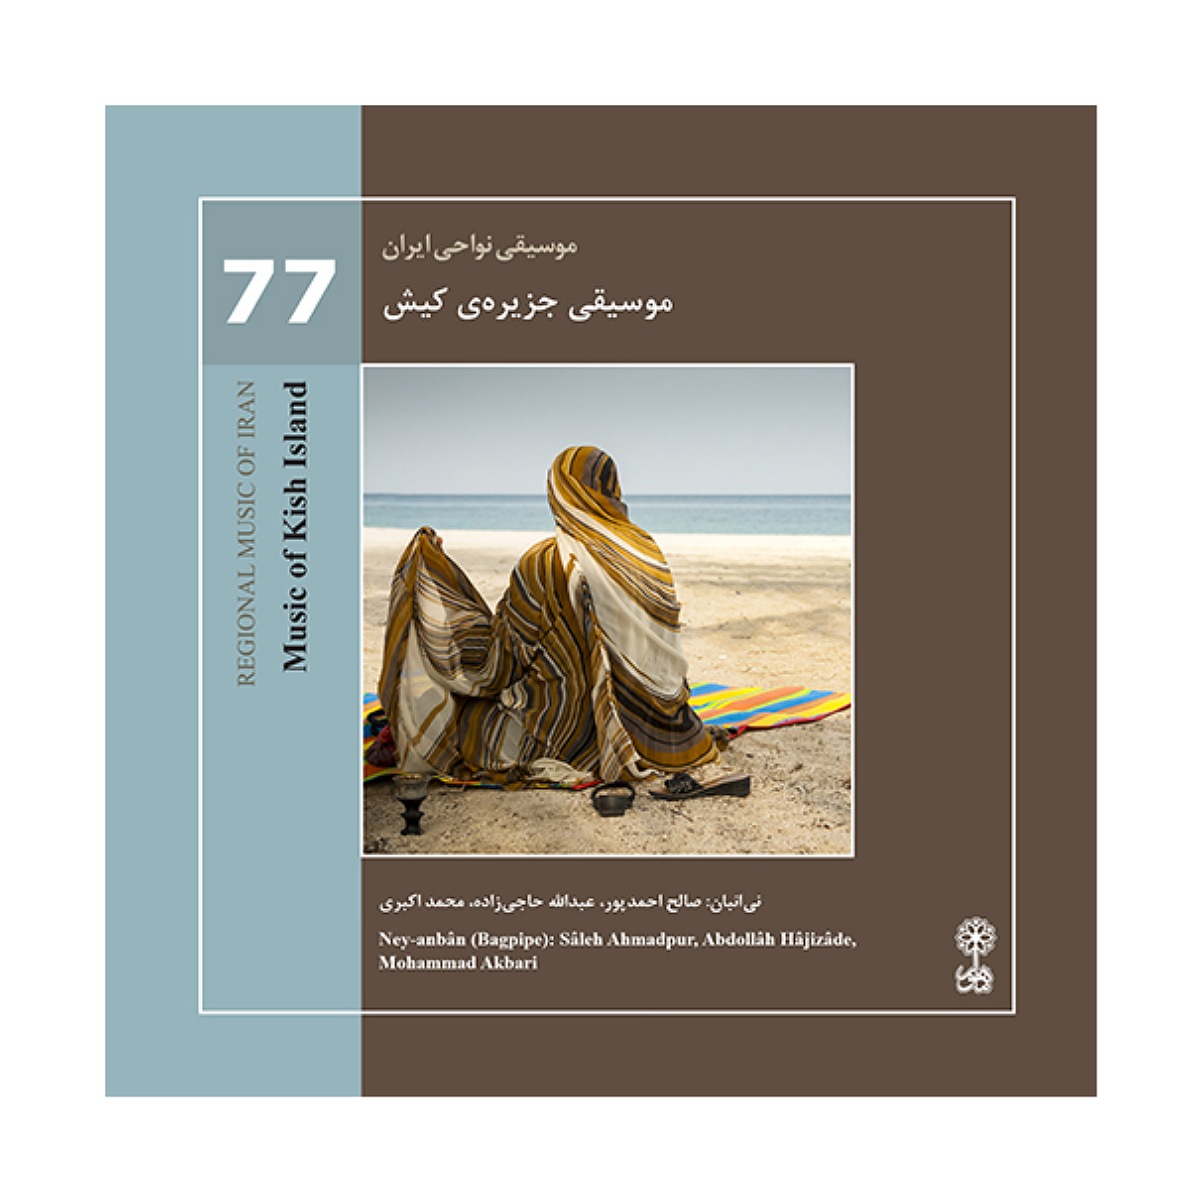 آلبوم موسیقی جزیره ی کیش اثر صالح احمد پور